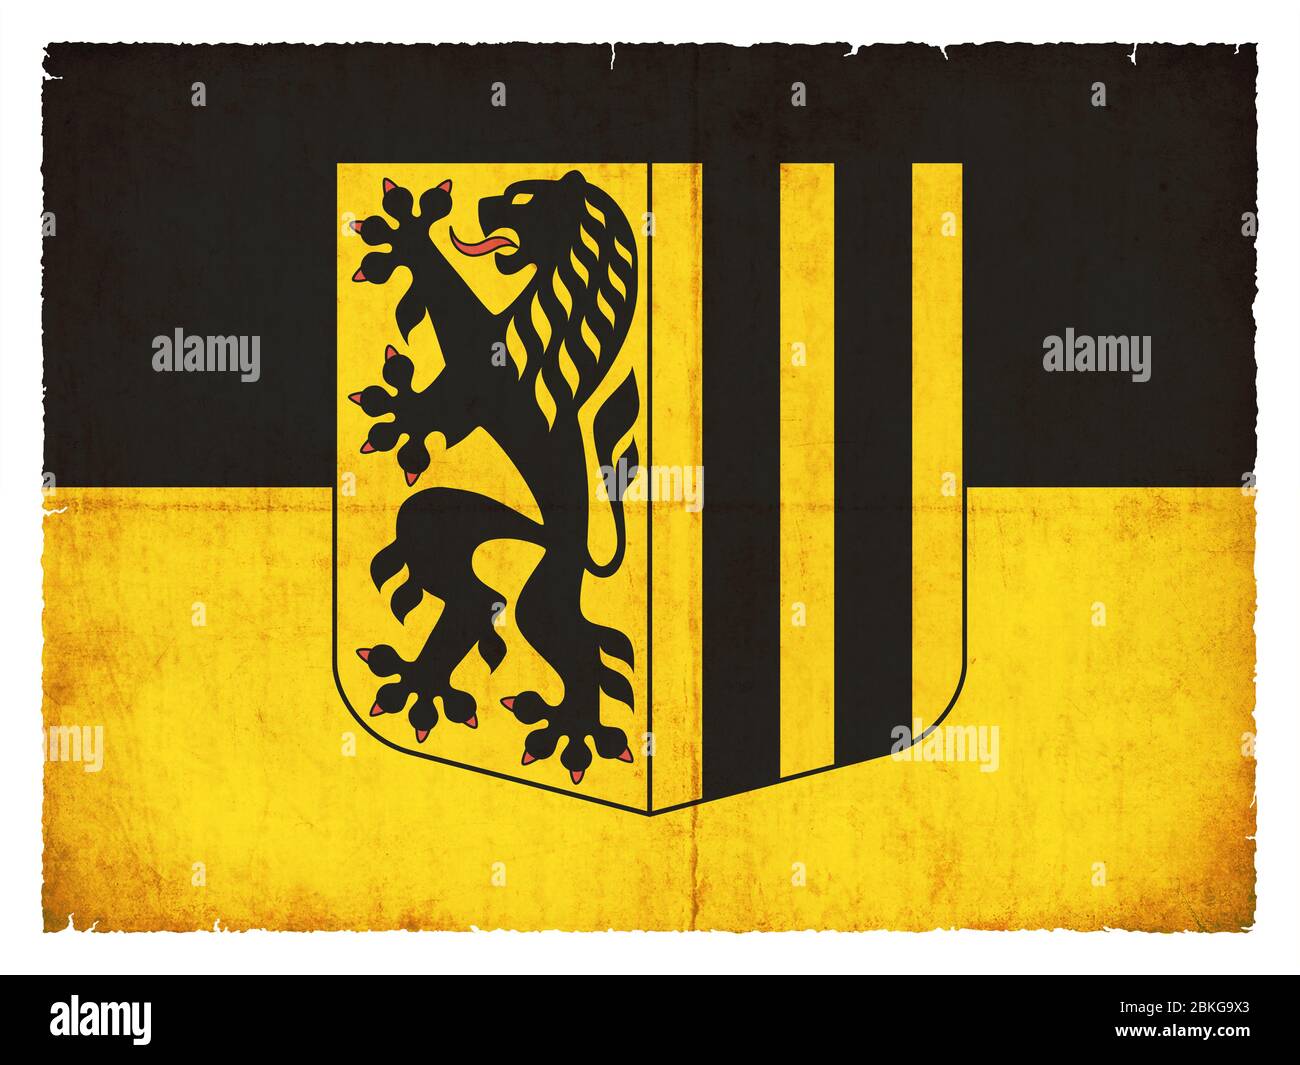 Bandera de la ciudad alemana de Dresde (Sajonia, Alemania) creada en estilo grunge Foto de stock